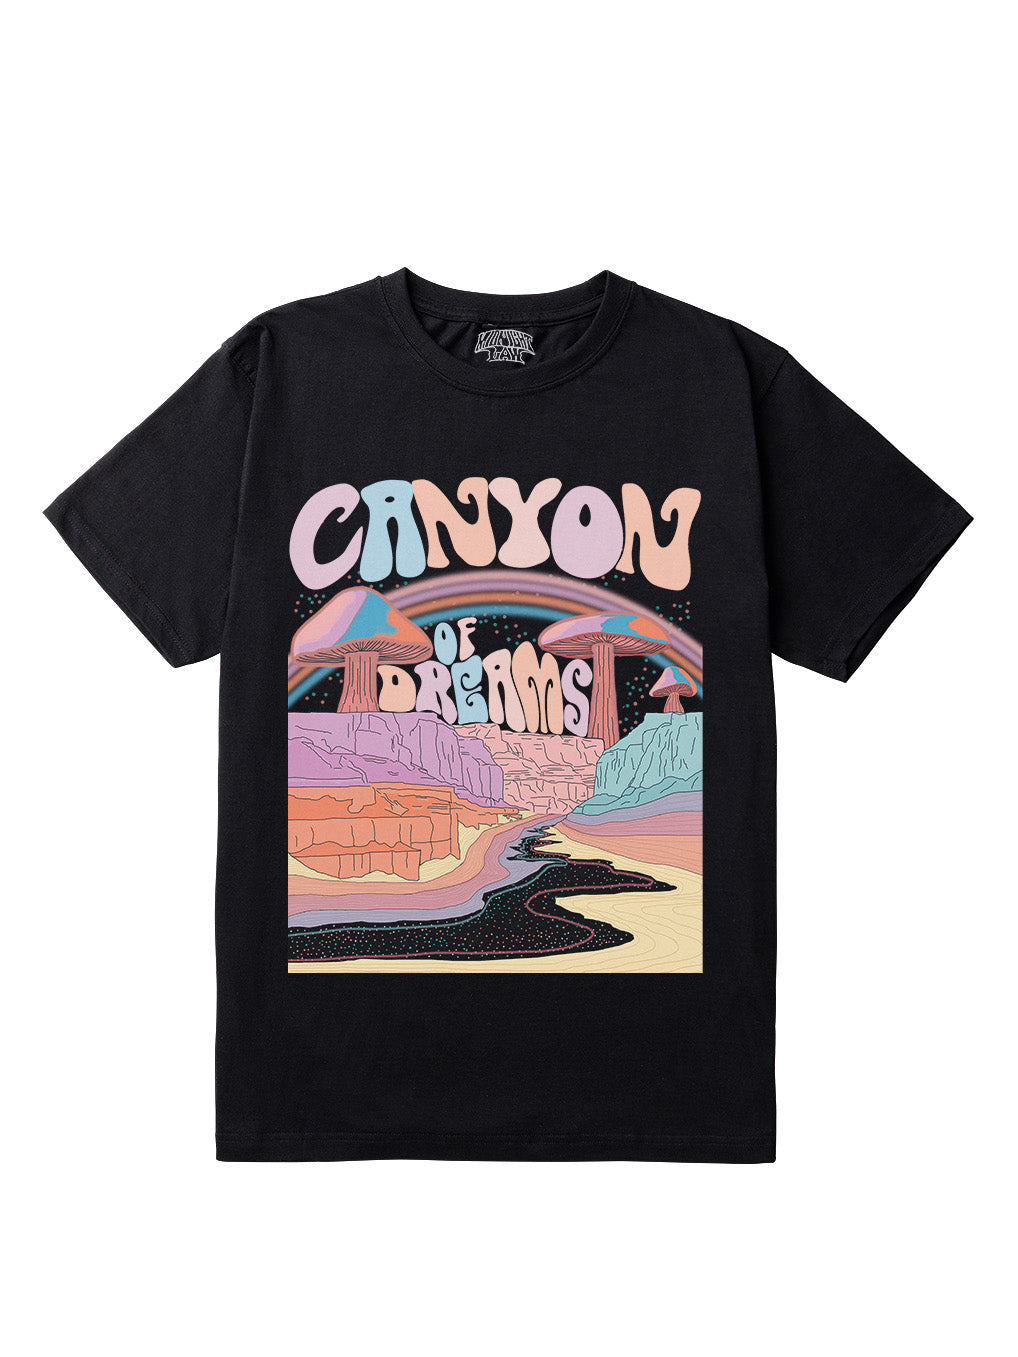 Canyon of Dreams T-Shirt